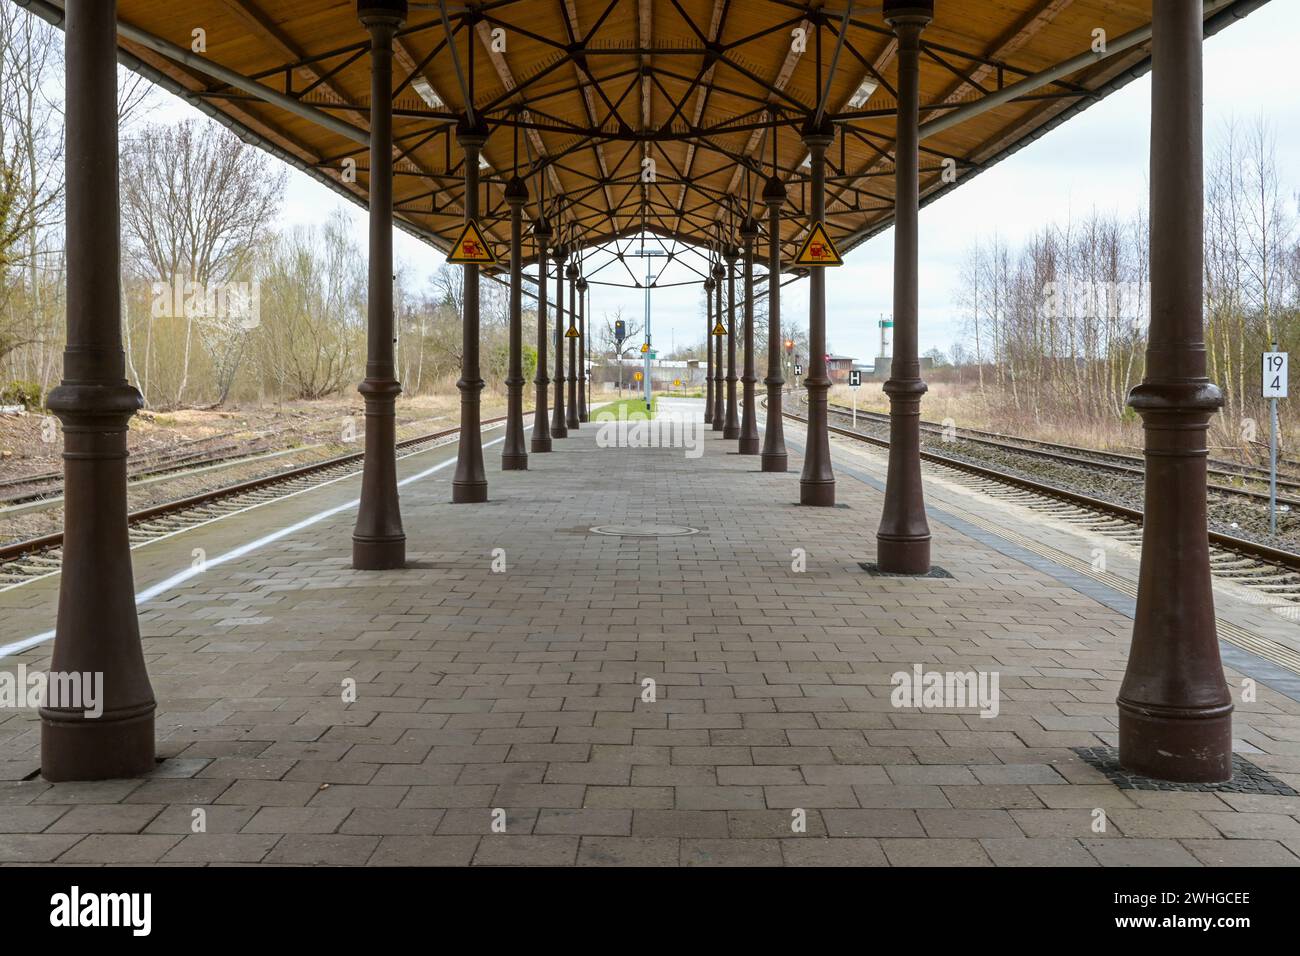 Piattaforma coperta con colonne d'epoca, impalcature in metallo e tetto in legno tra i binari della ferrovia sulla stazione di Schonberg Foto Stock